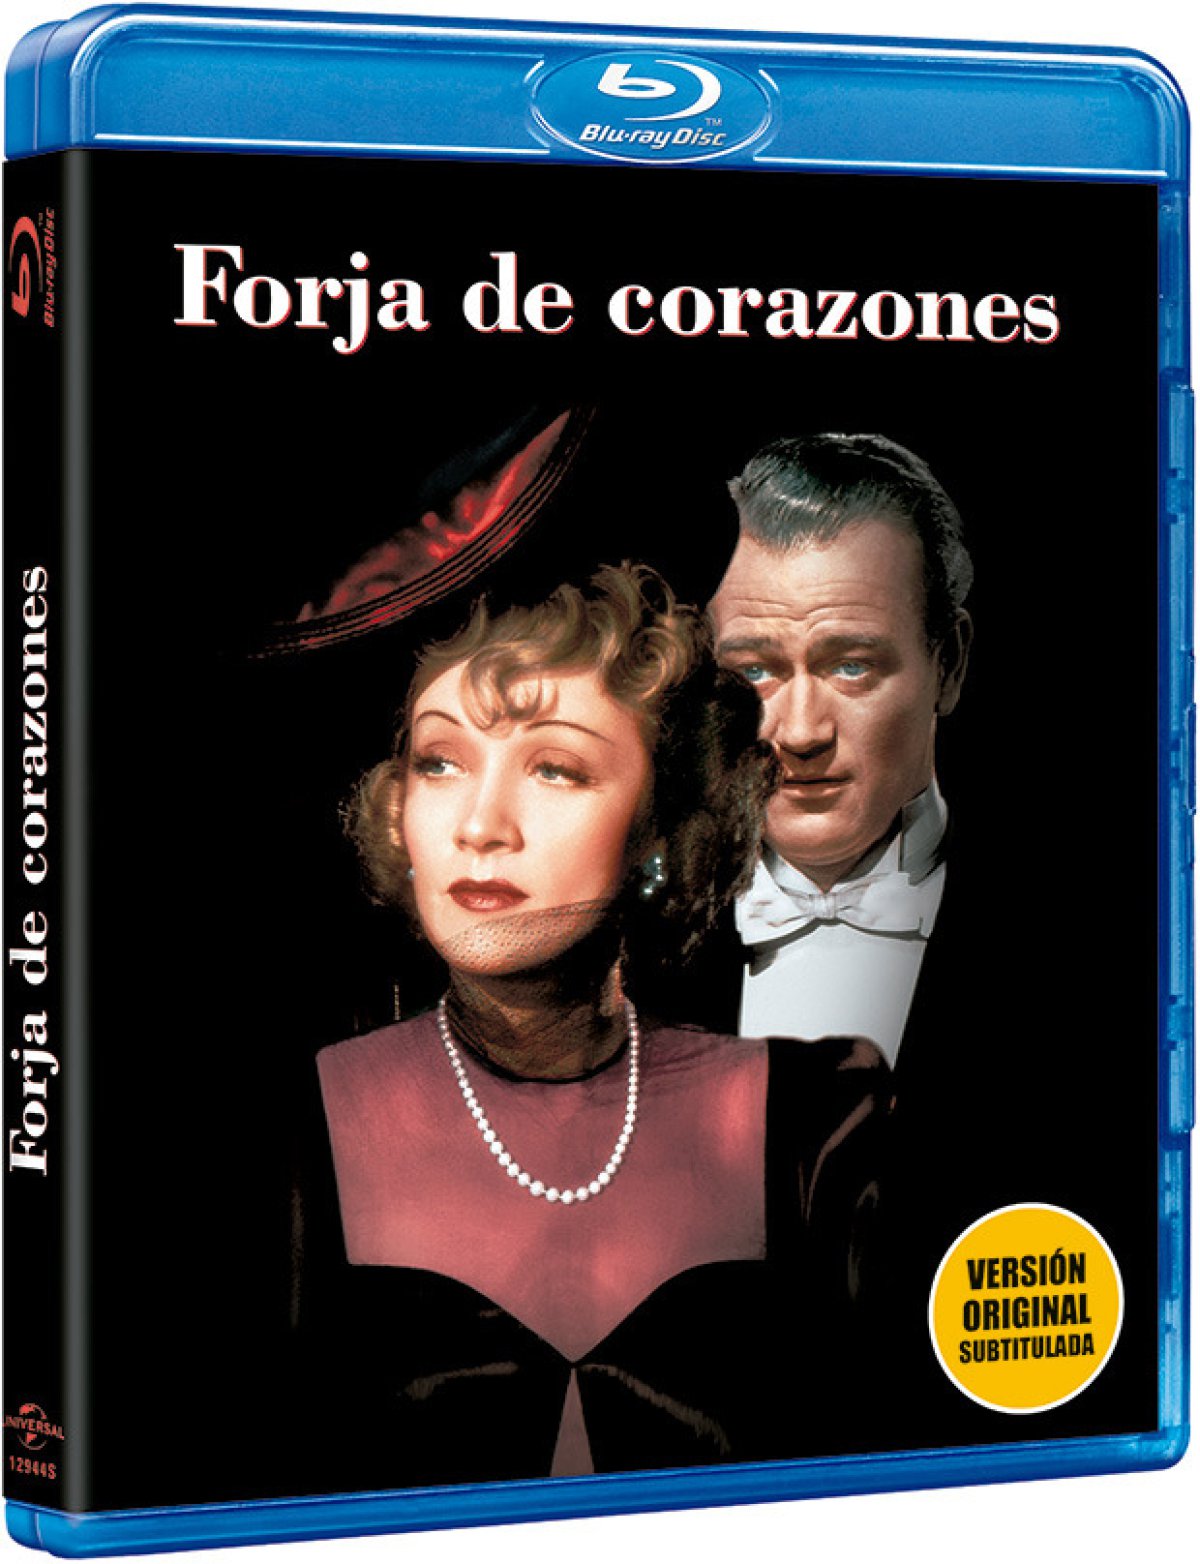 Marlene Dietrich (i) y John Ford (d) en la carátula de &#039;Forja de corazones&#039;